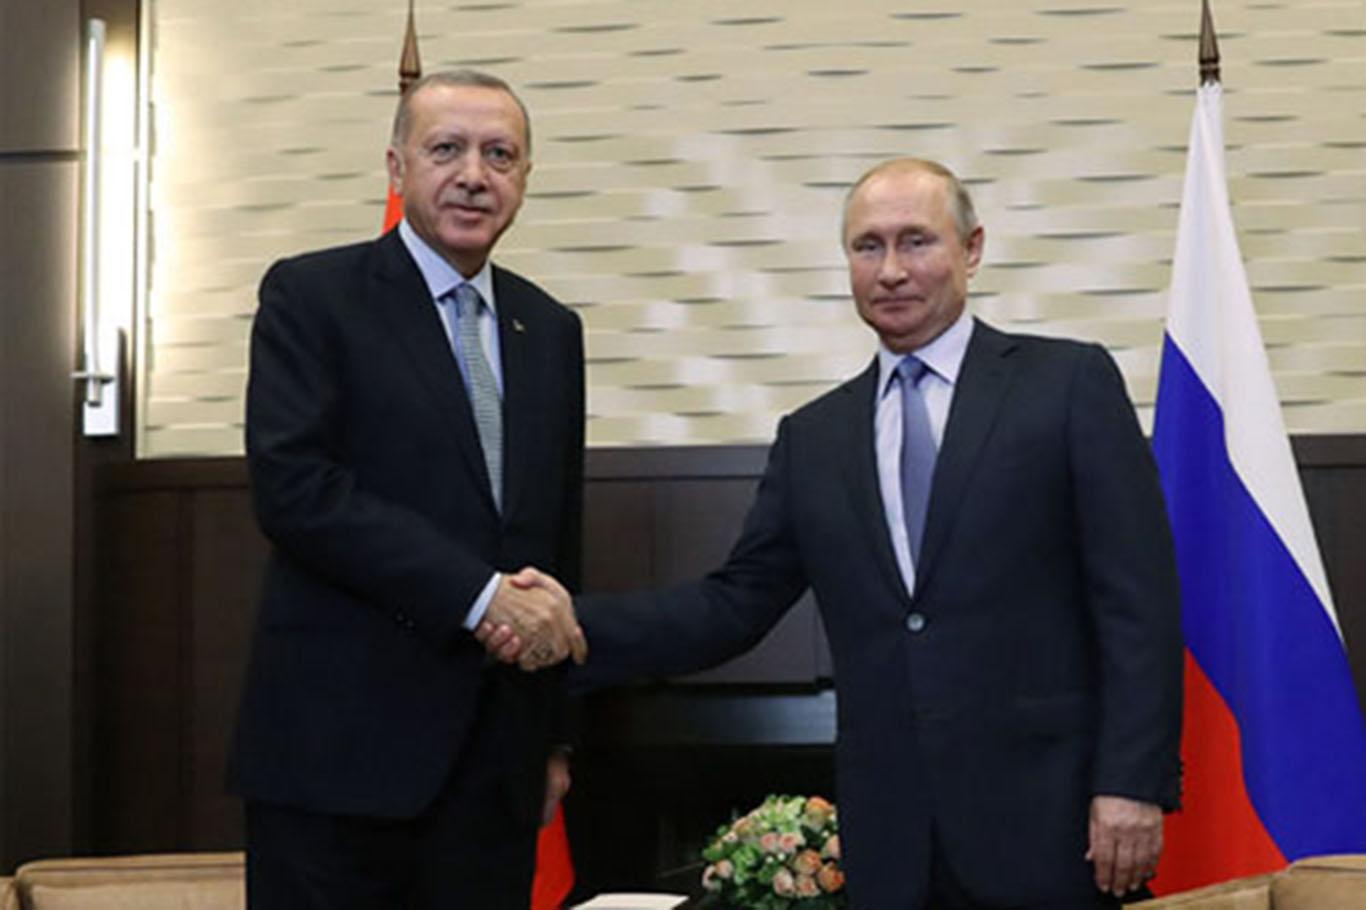 Erdogan set to meet Putin 